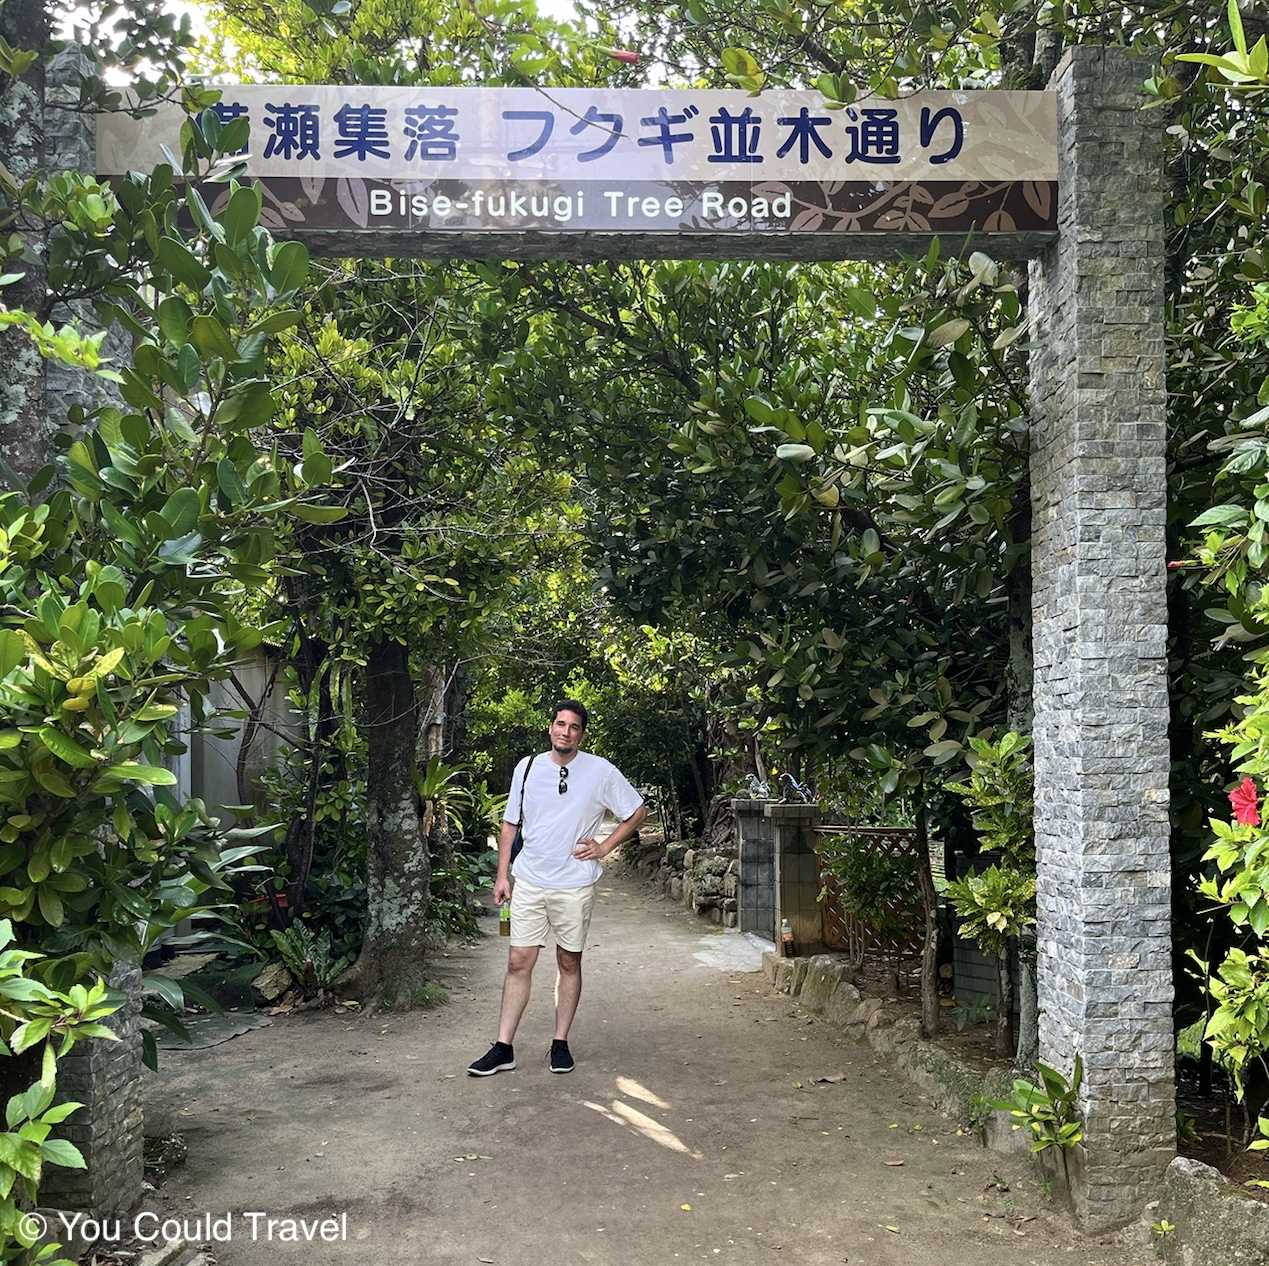 Bise-Fukugi Tree Road in Okinawa